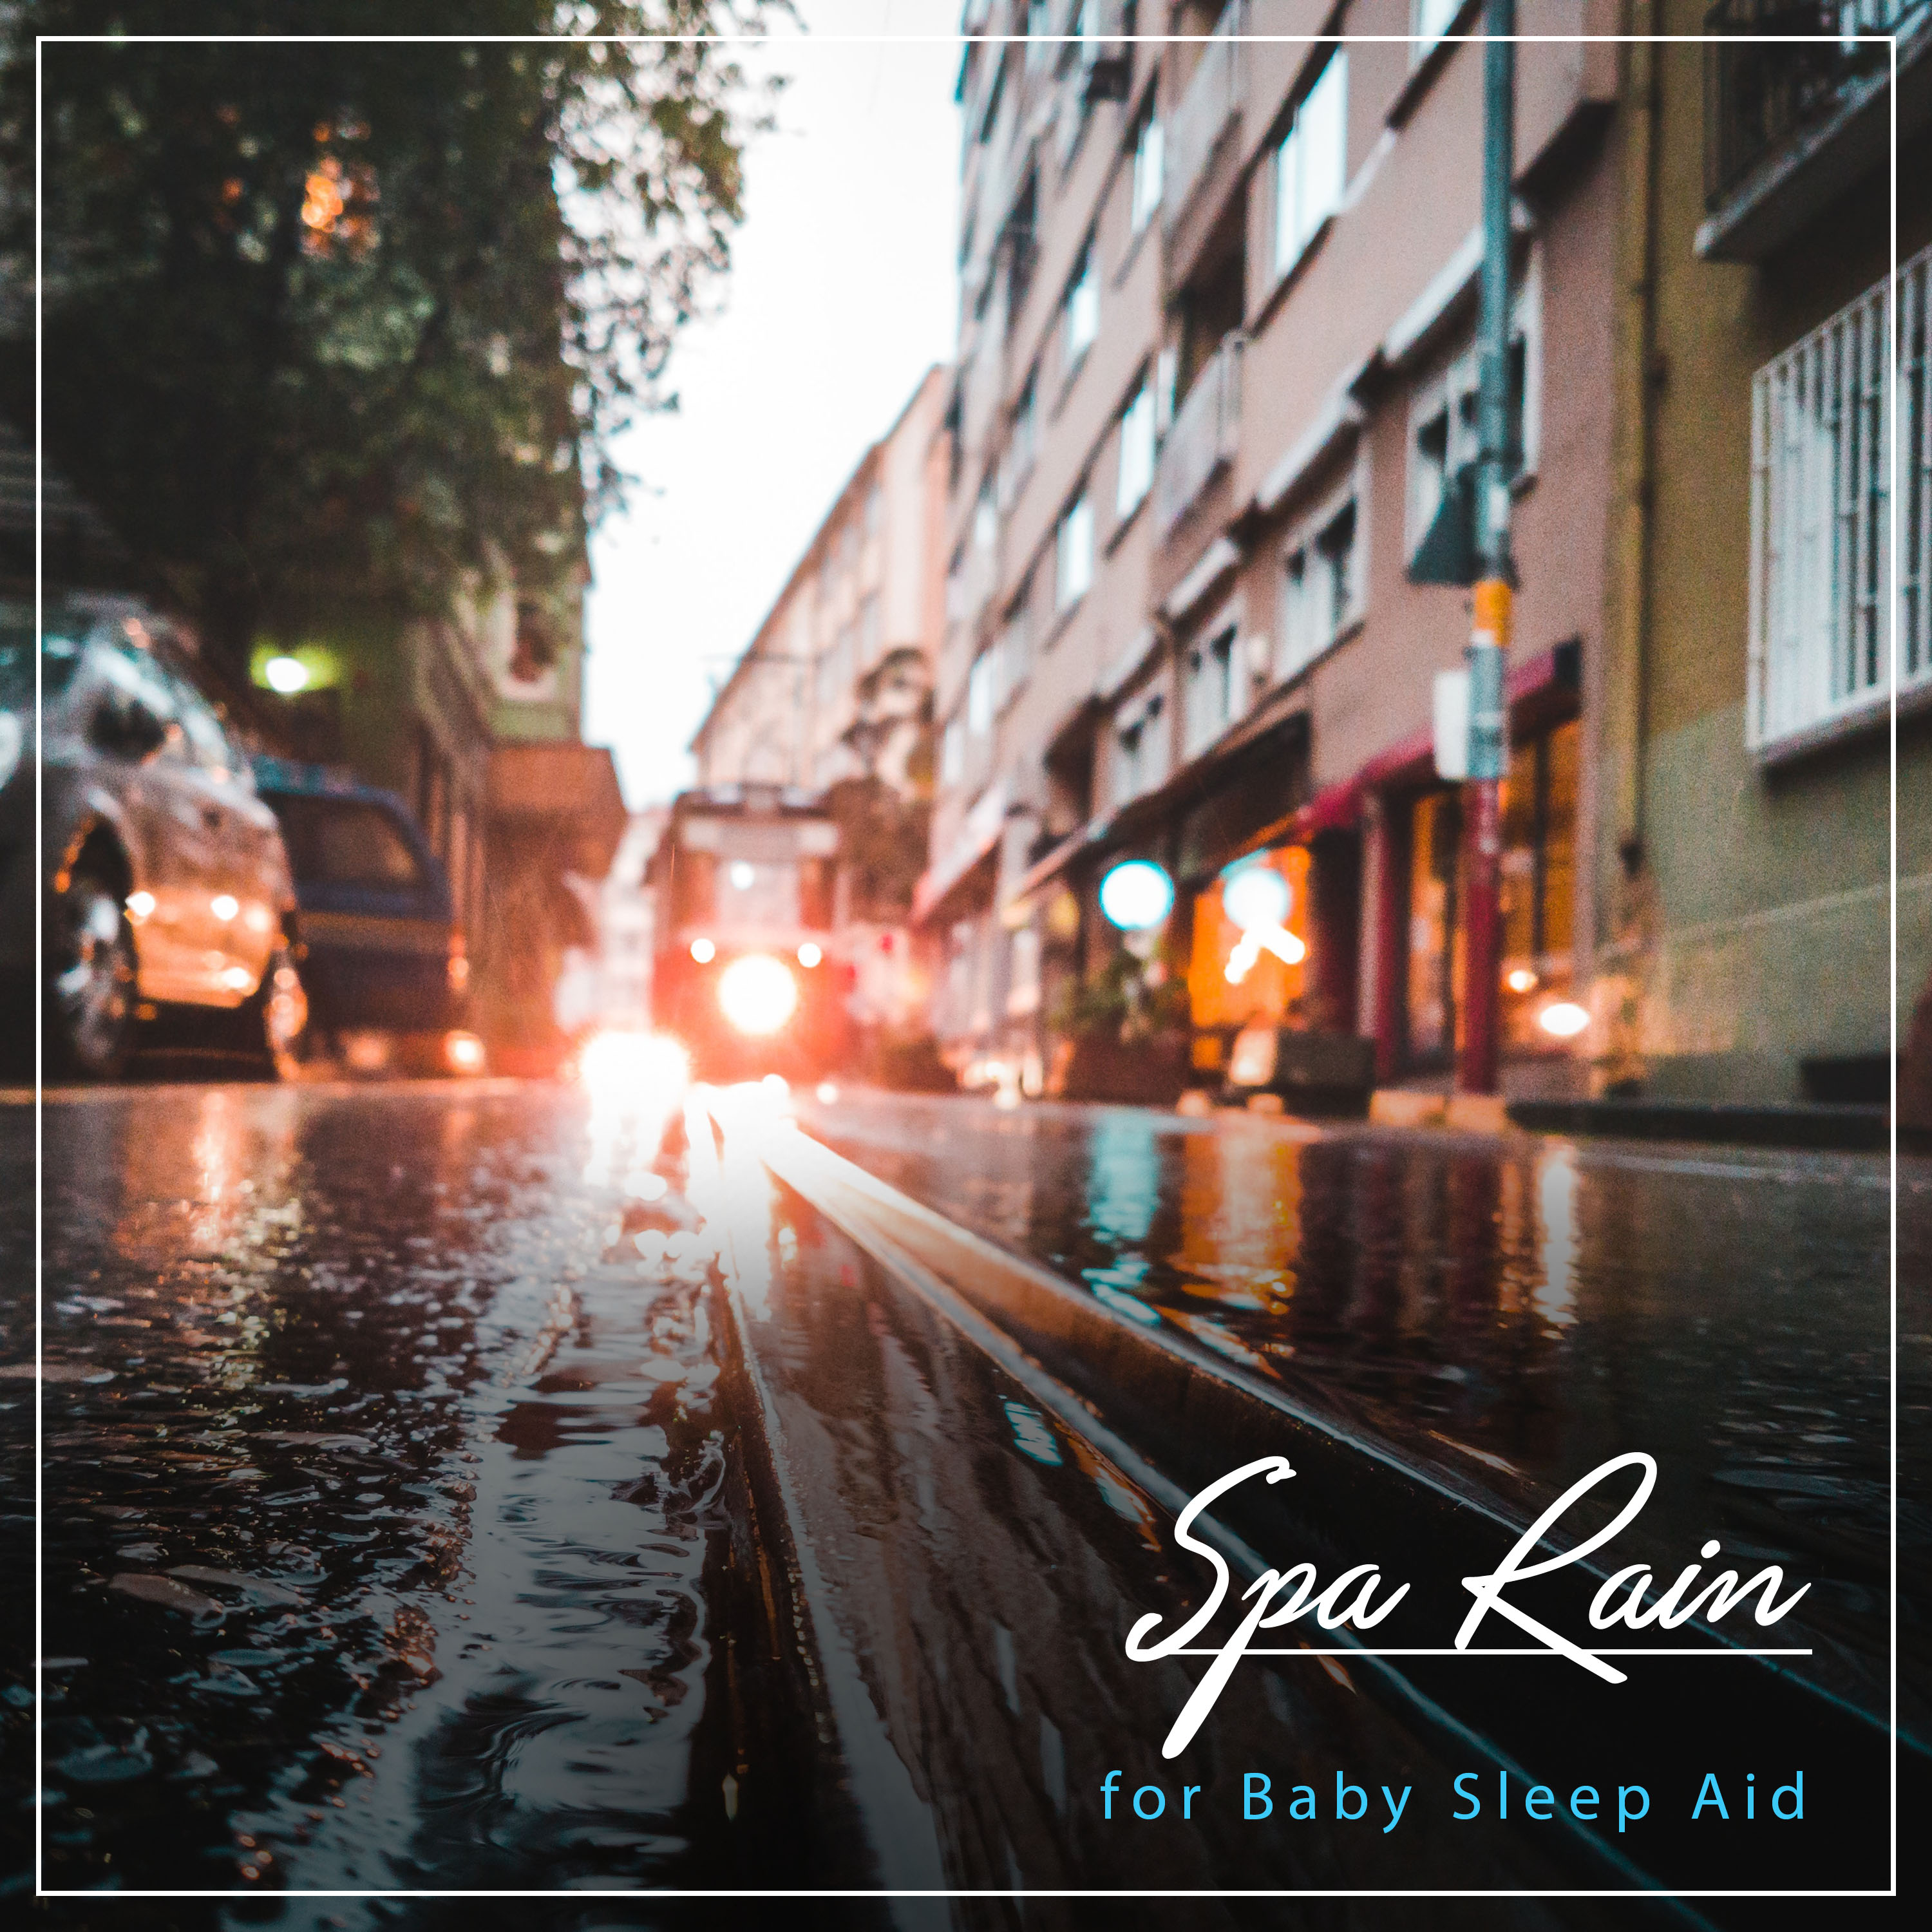 Rain Sounds - Deep Sleep